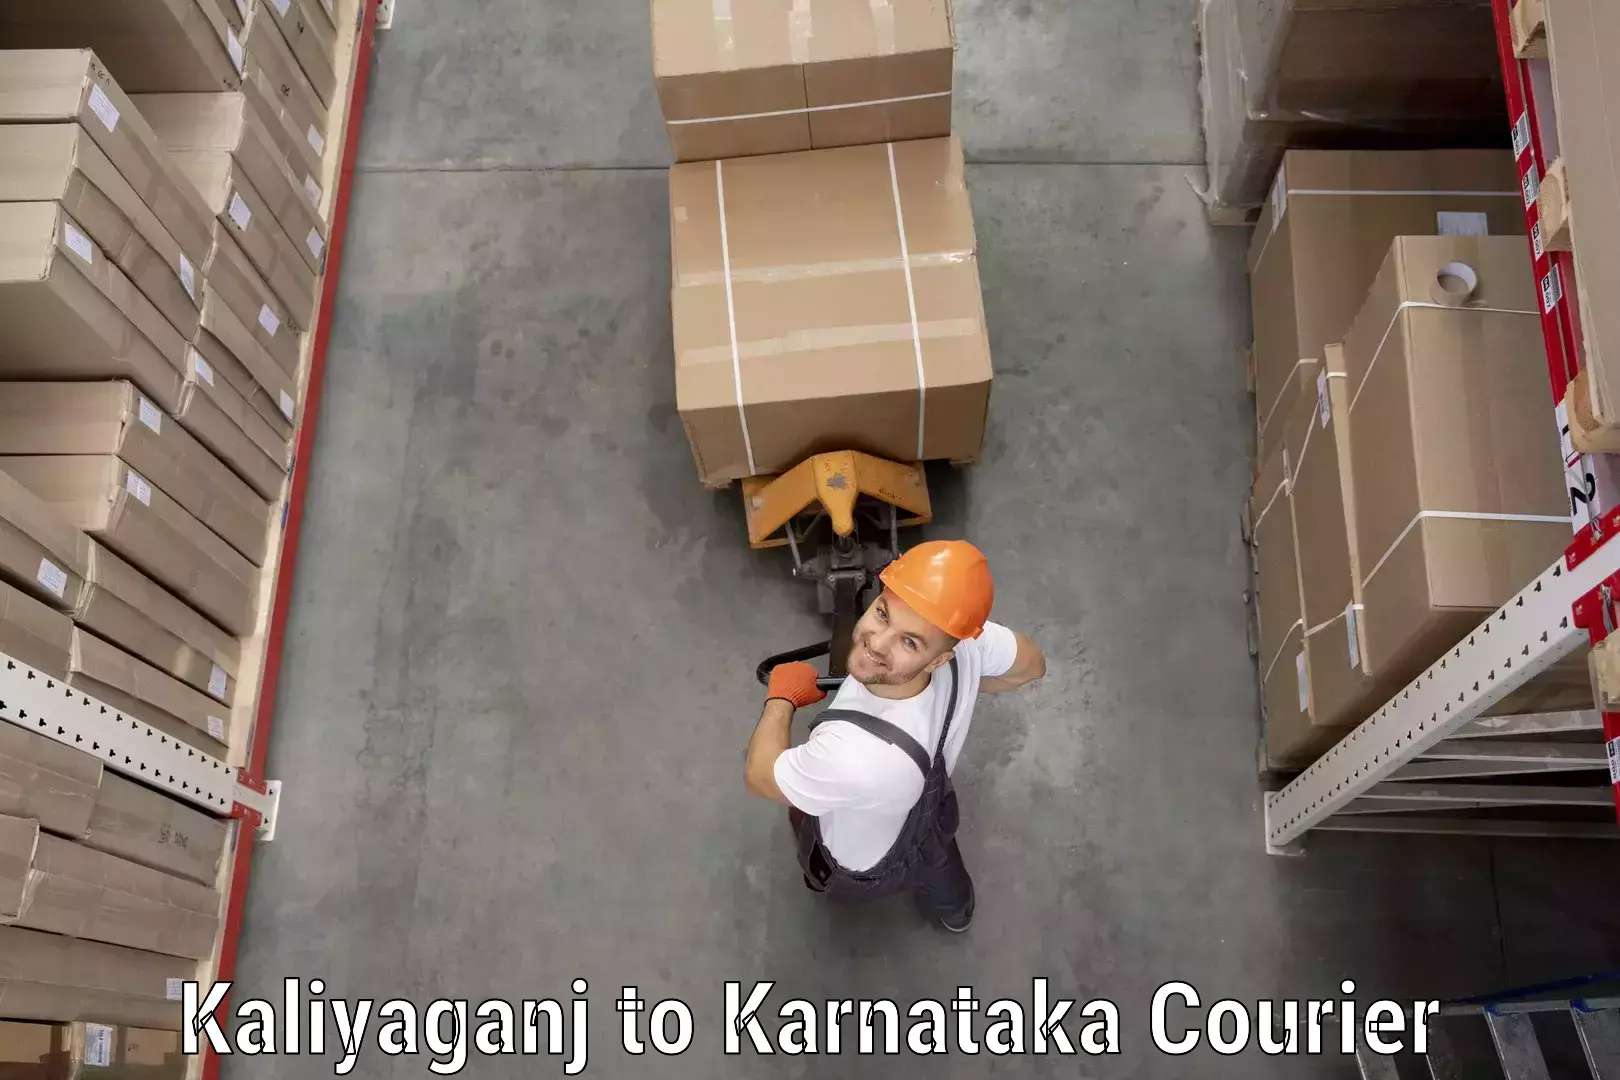 On-call courier service Kaliyaganj to Athani